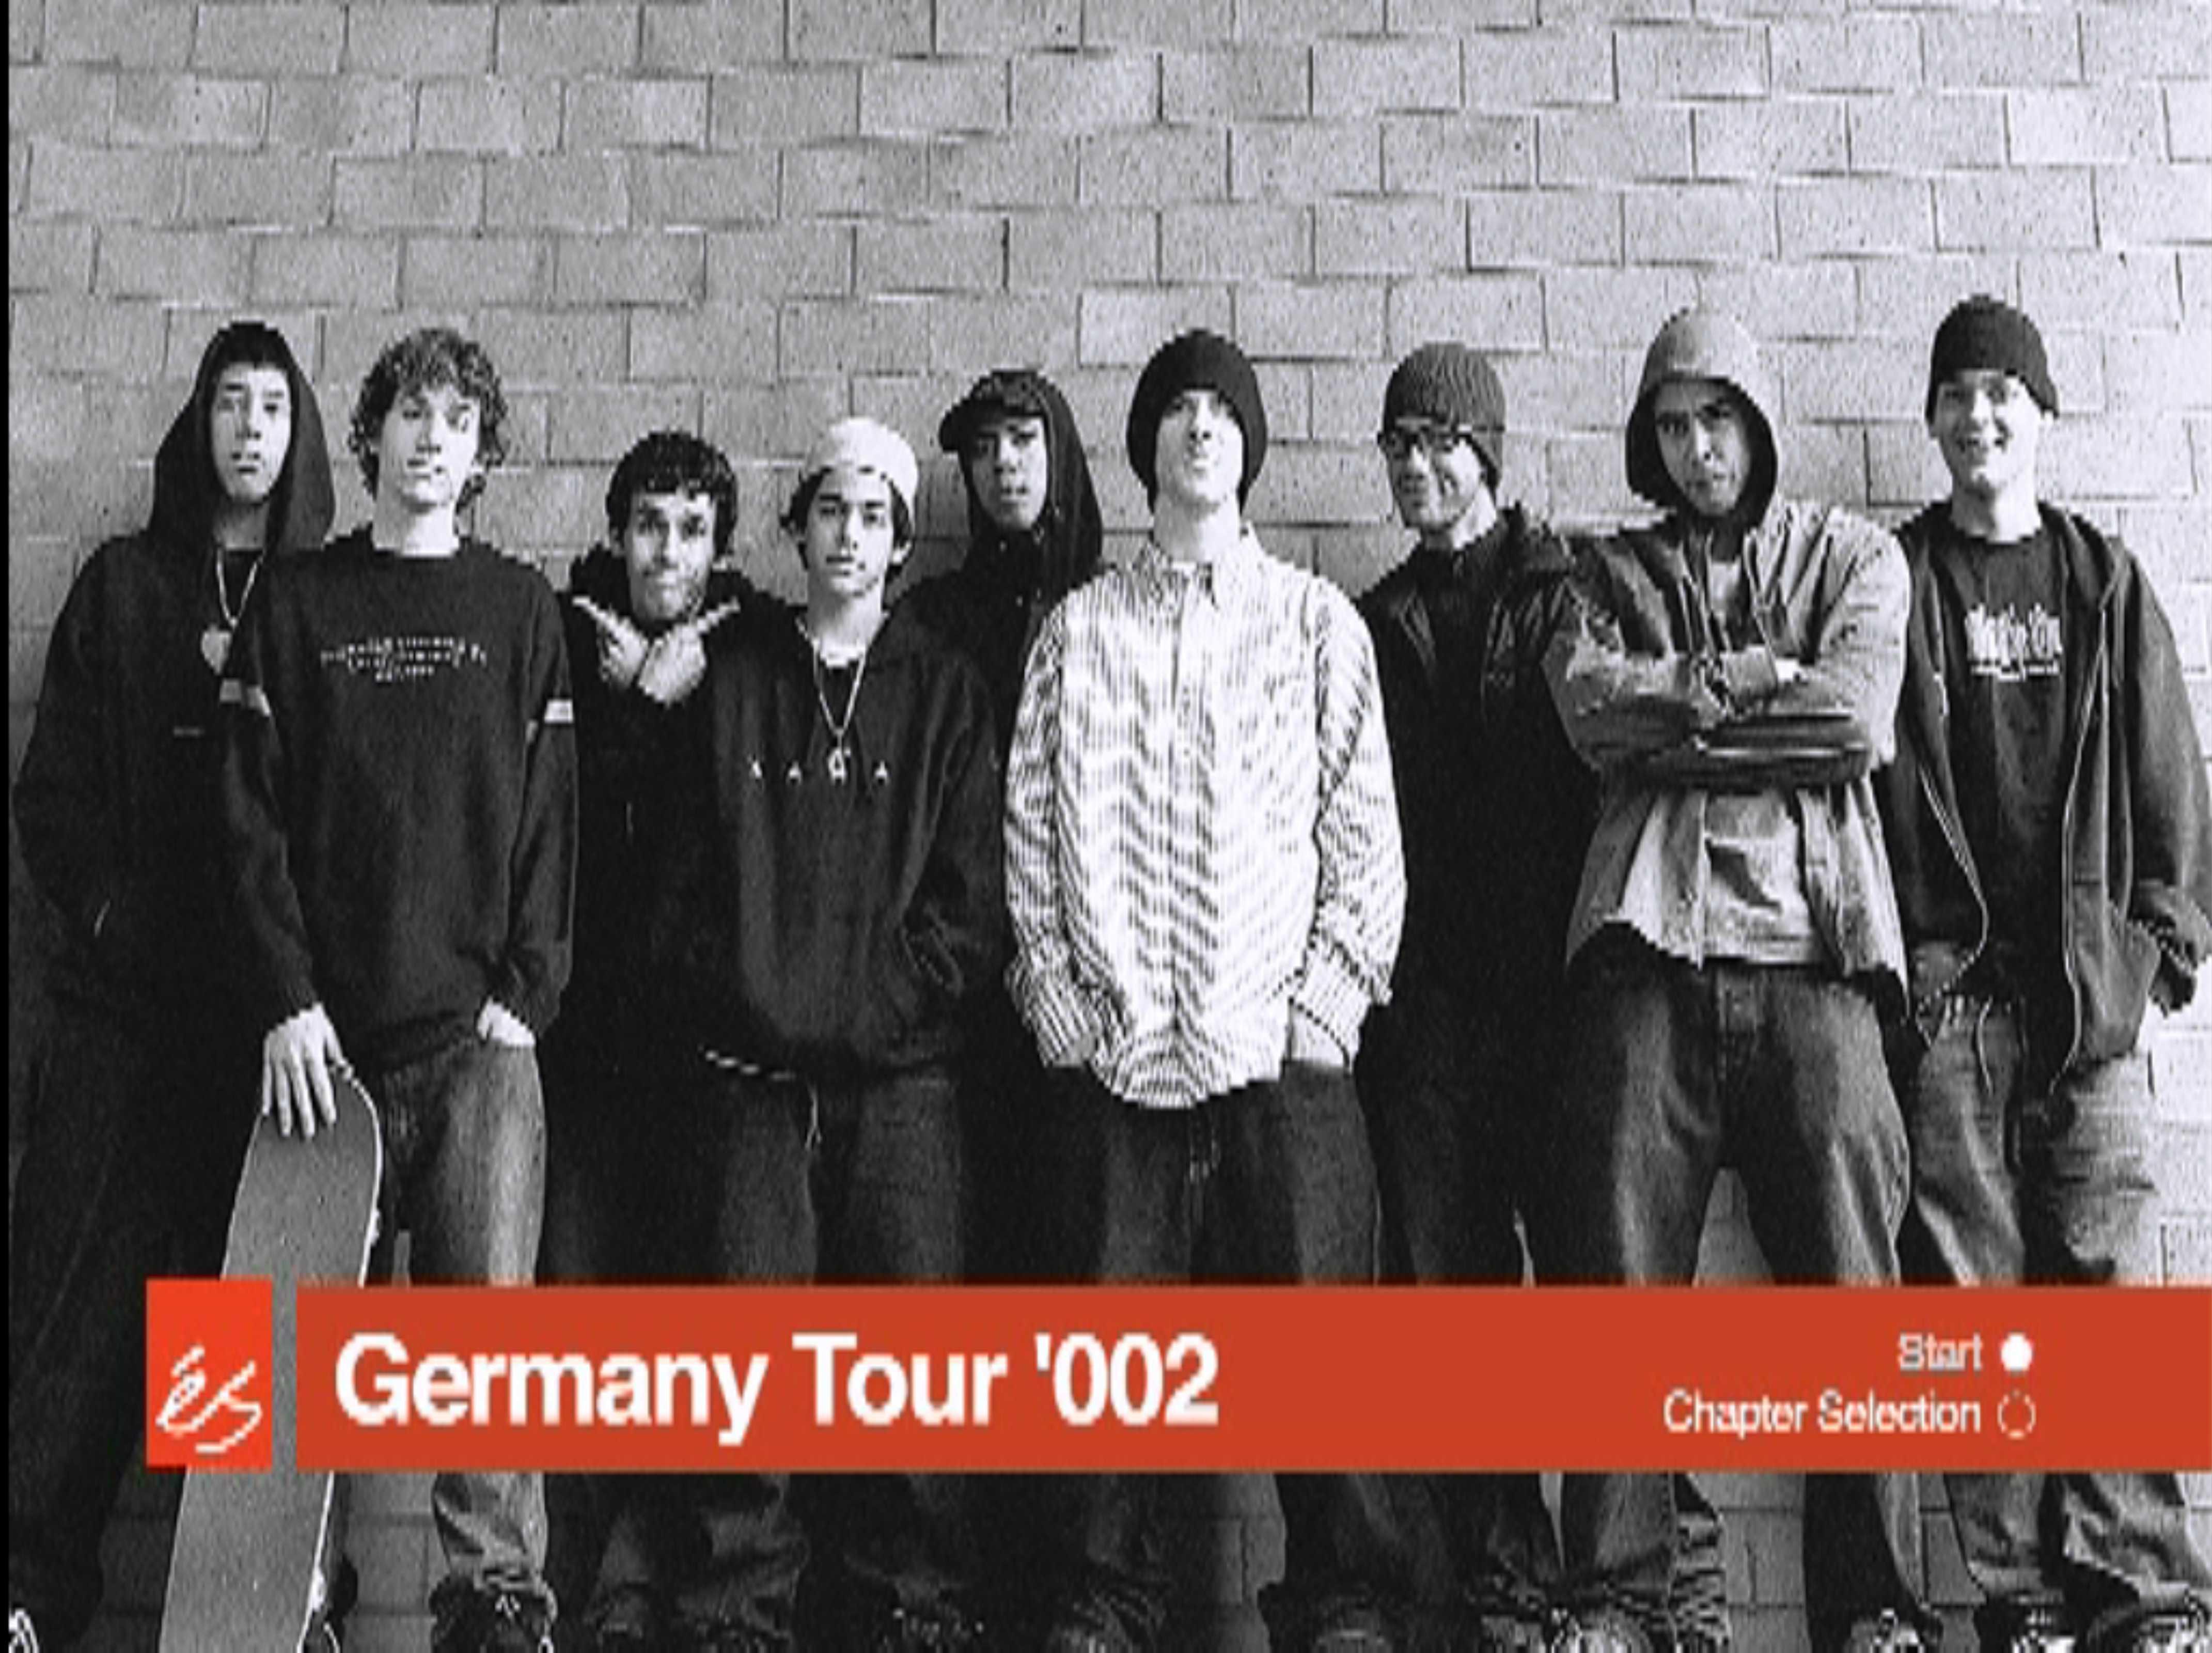 éS - Germany Tour 2002 feature image